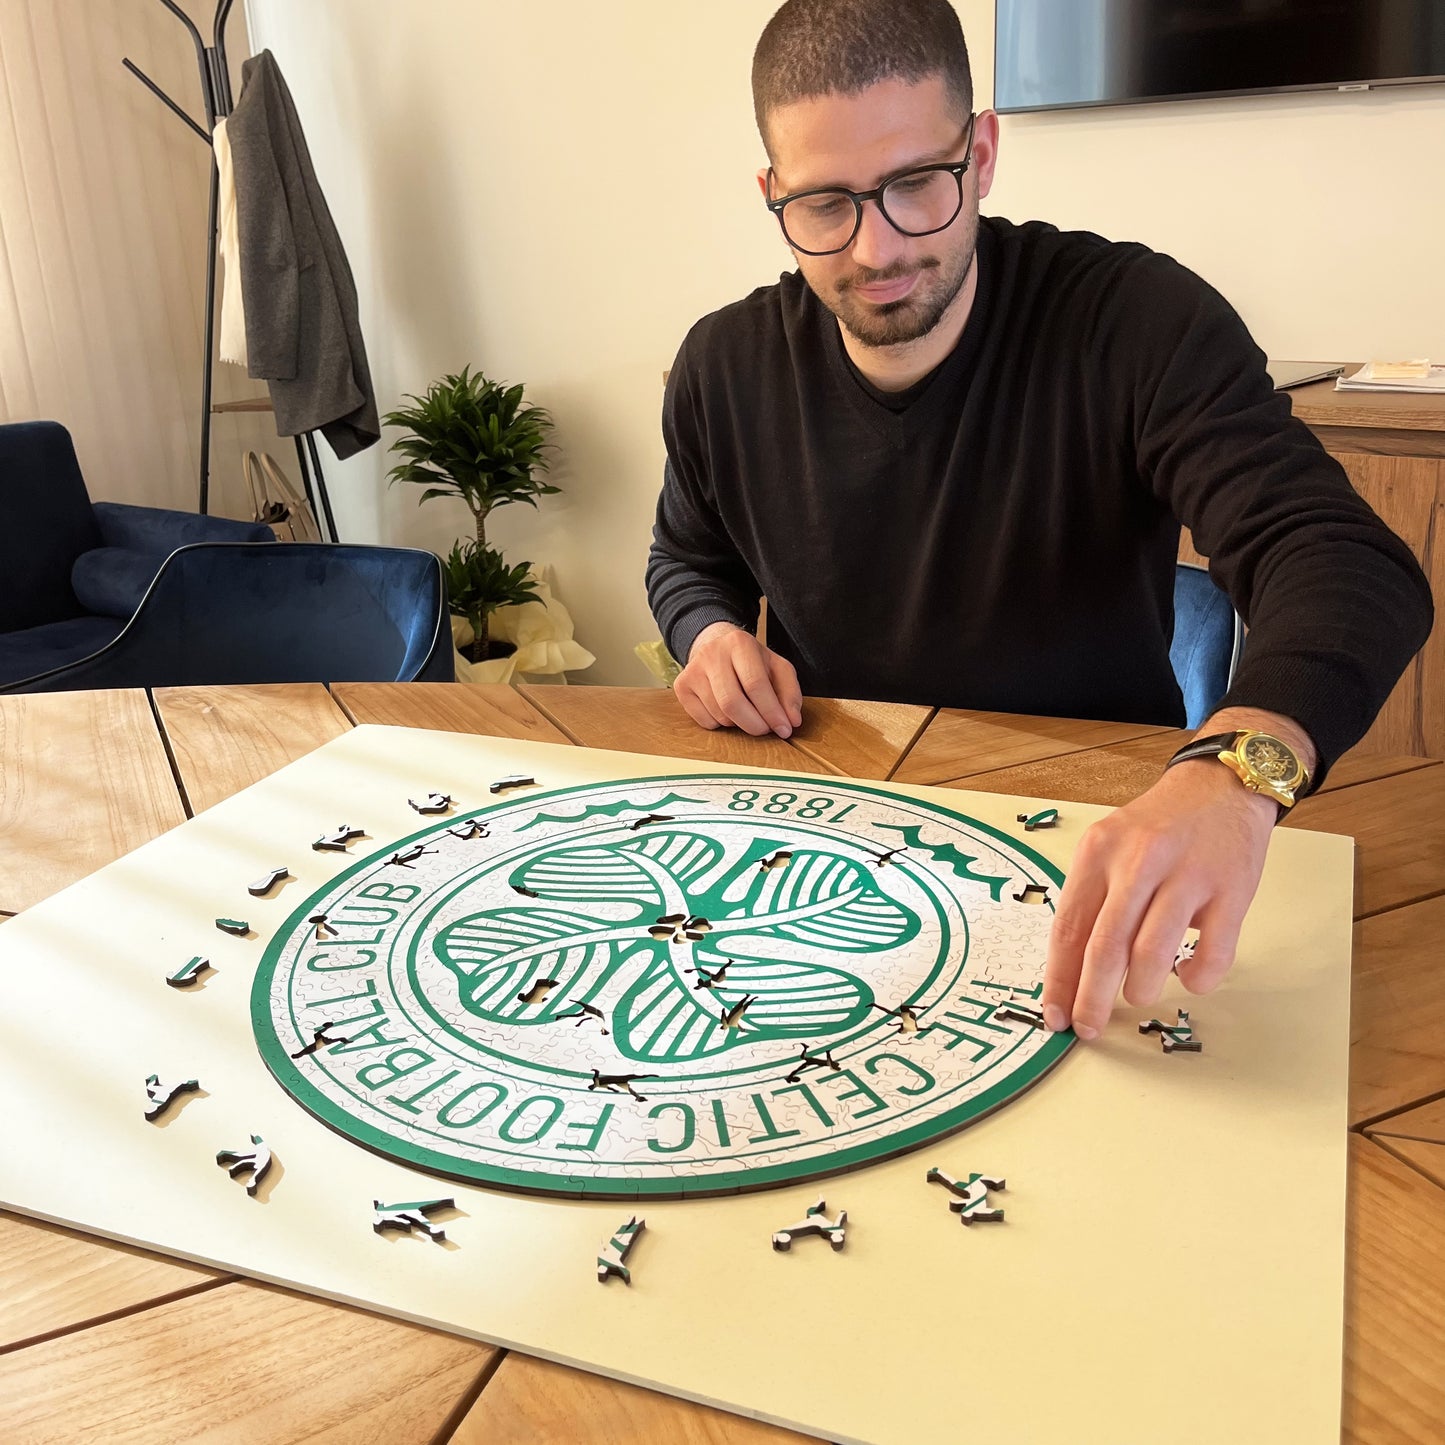 Celtic FC® Crest - Wooden Puzzle